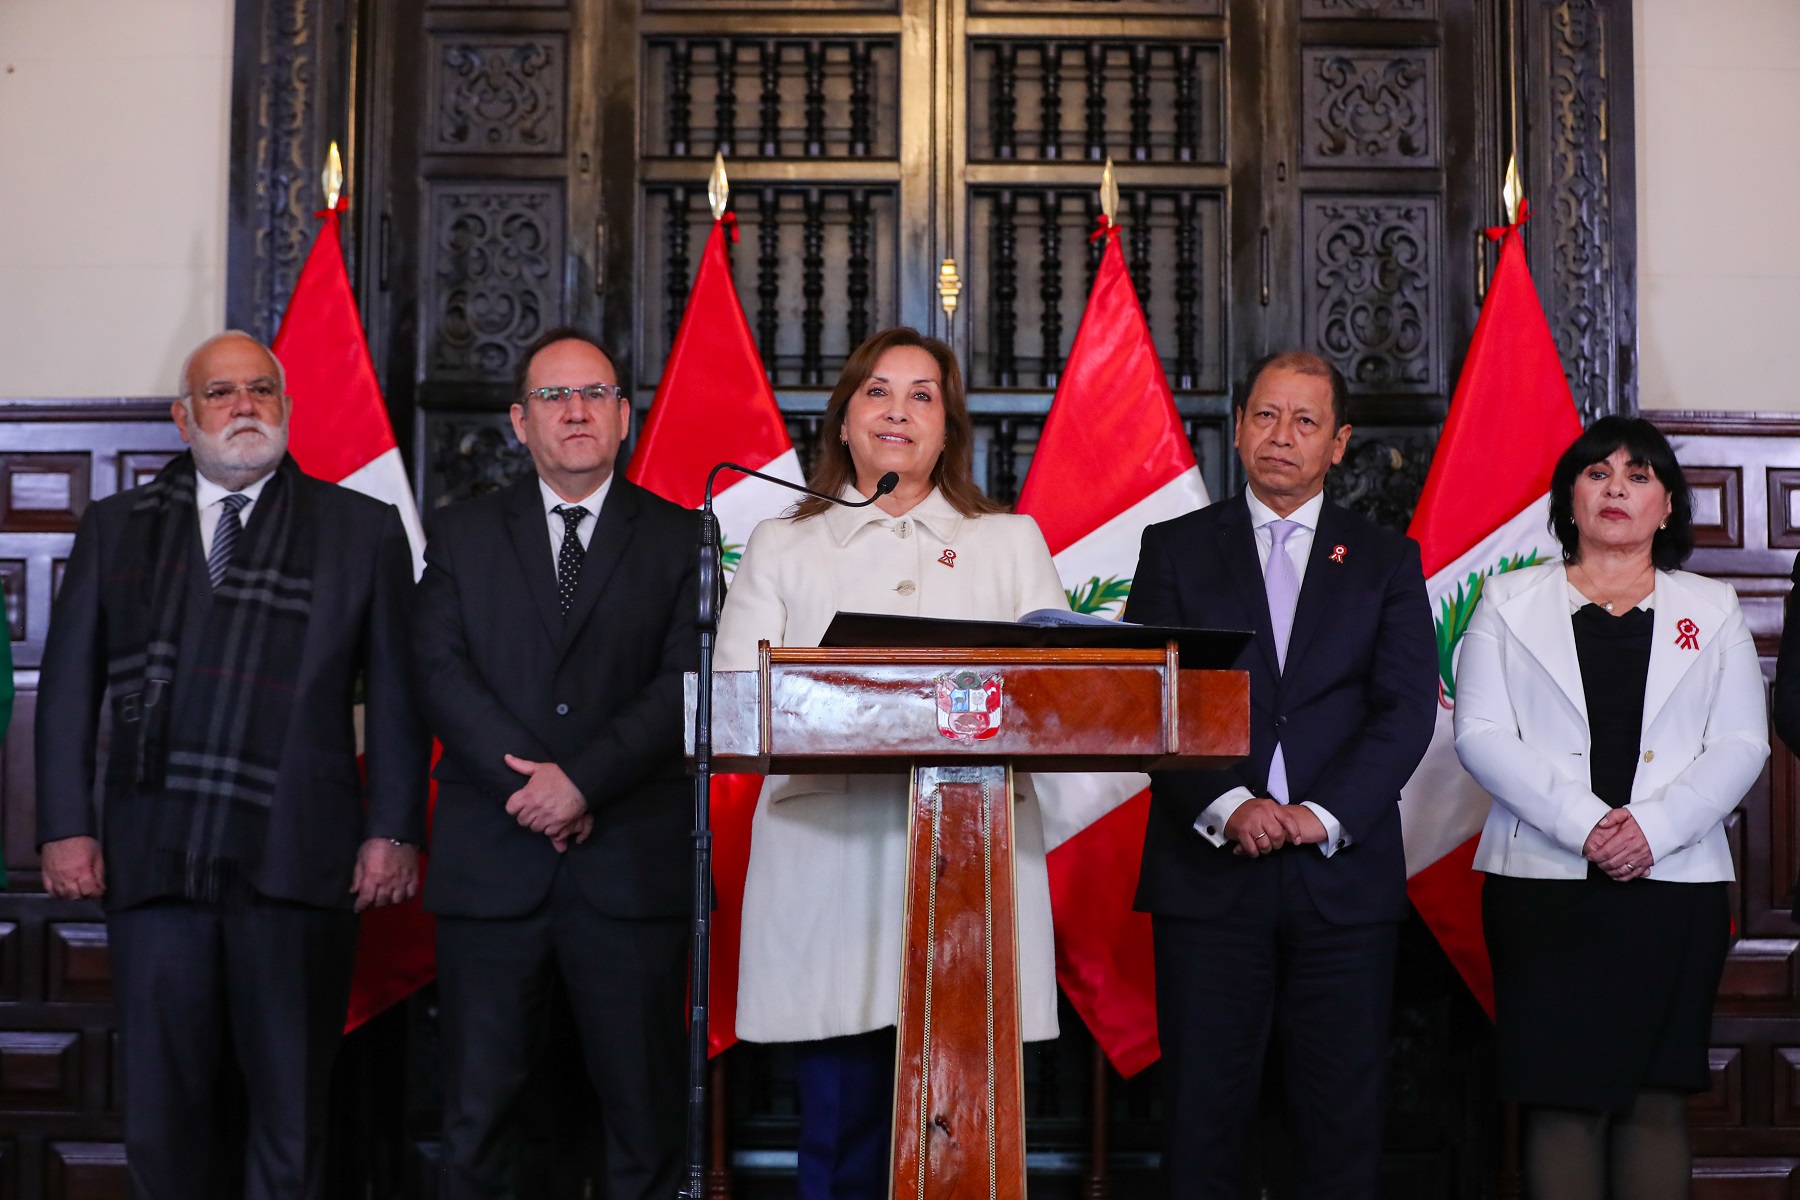 Dos hospitales de EsSalud se construirán en Piura y Áncash que beneficiarán a más de un millón 300 000 peruanos, anunció la presidenta Dina Boluarte.